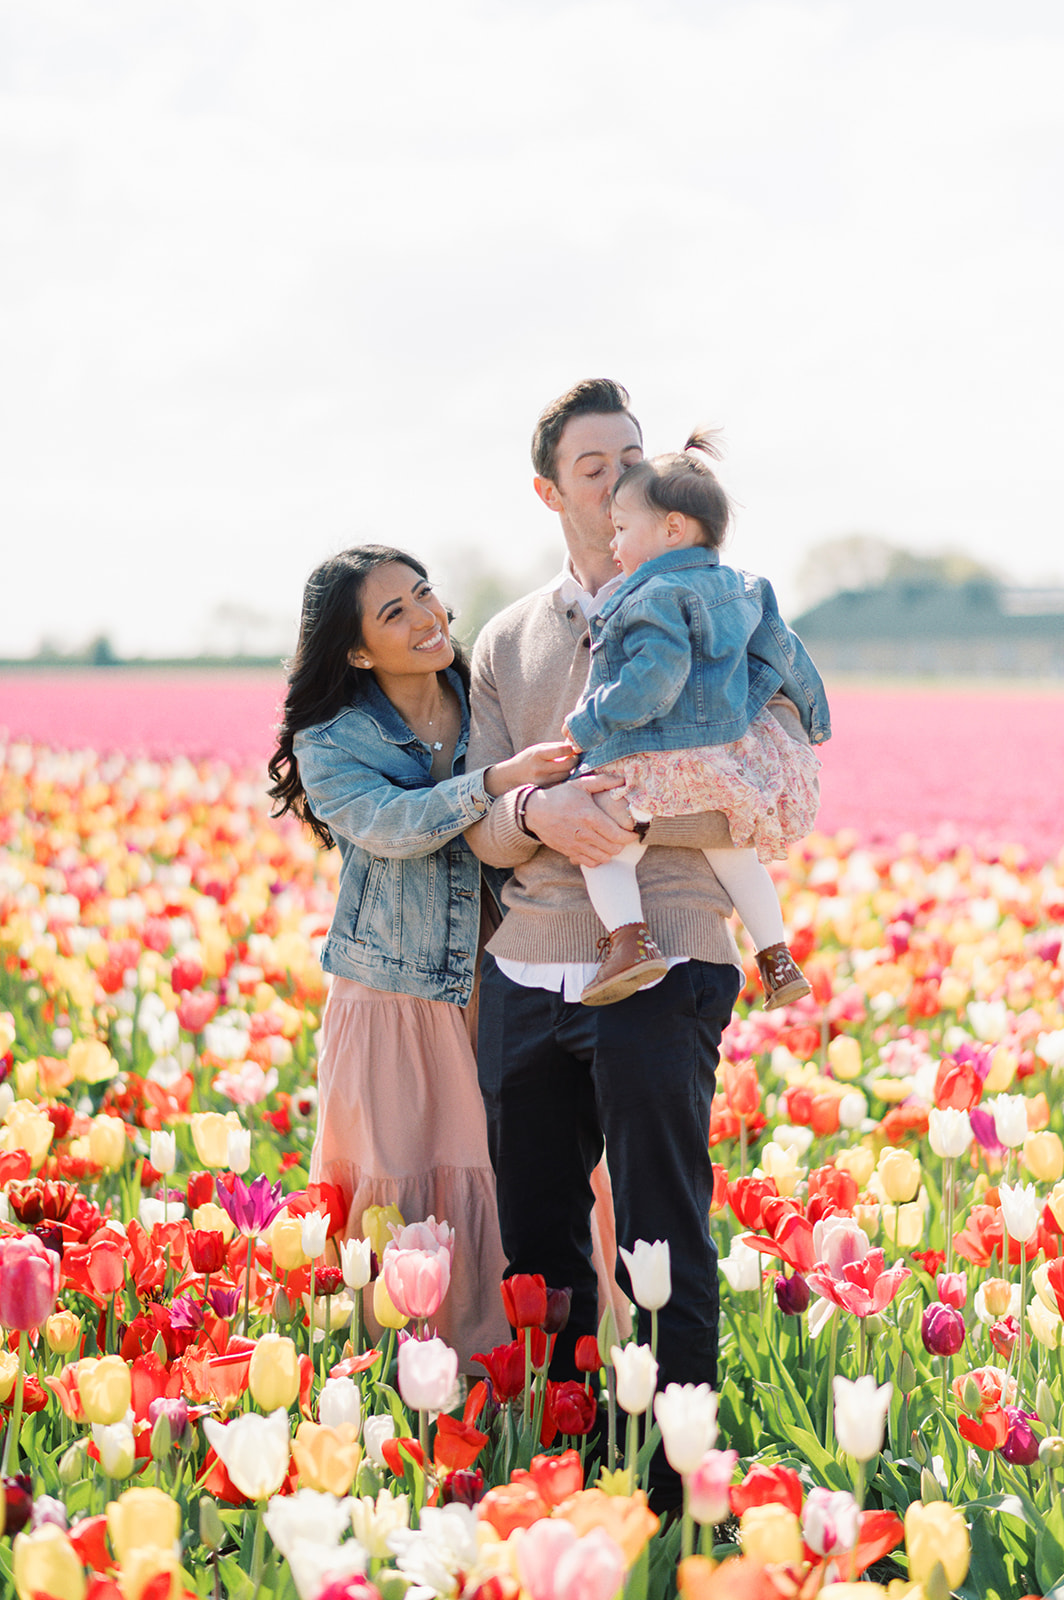 A Keukenhof tulip fields photoshoot 